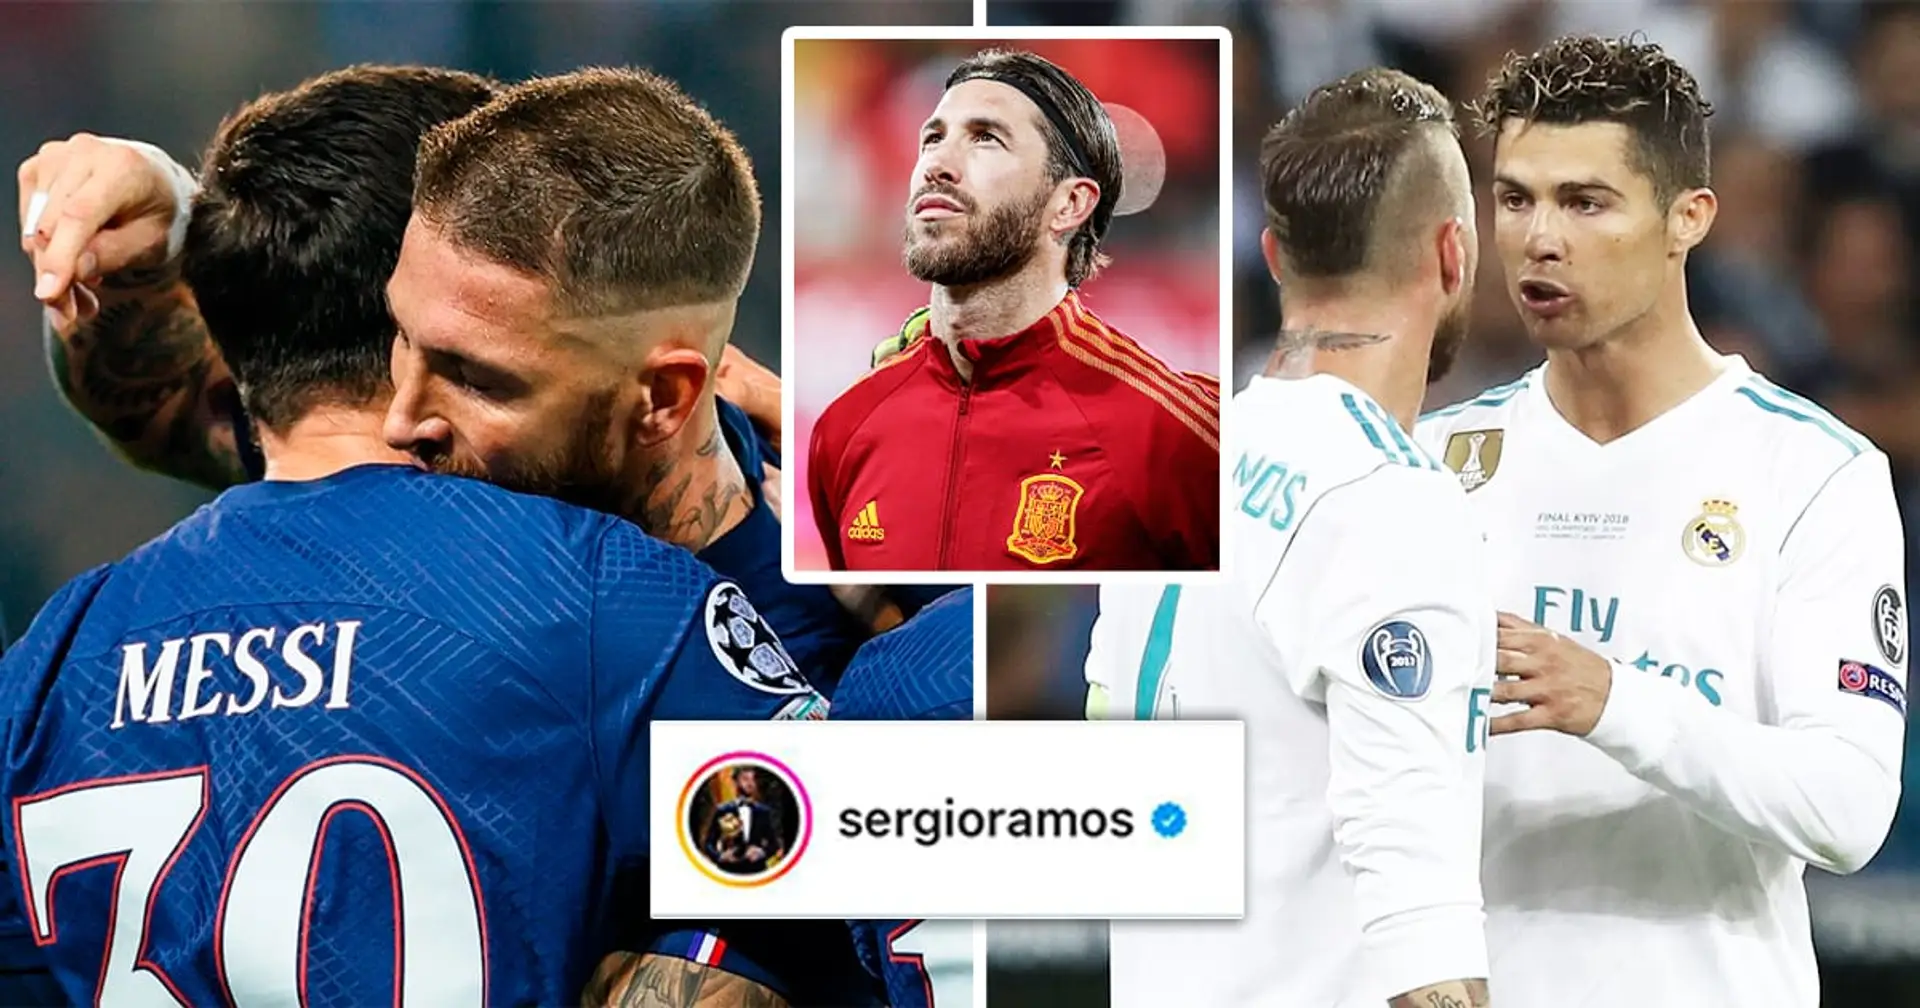 'Los admiro': Sergio Ramos menciona a Messi y dos compañeros del Real Madrid en su despedida de España, no a Cristiano